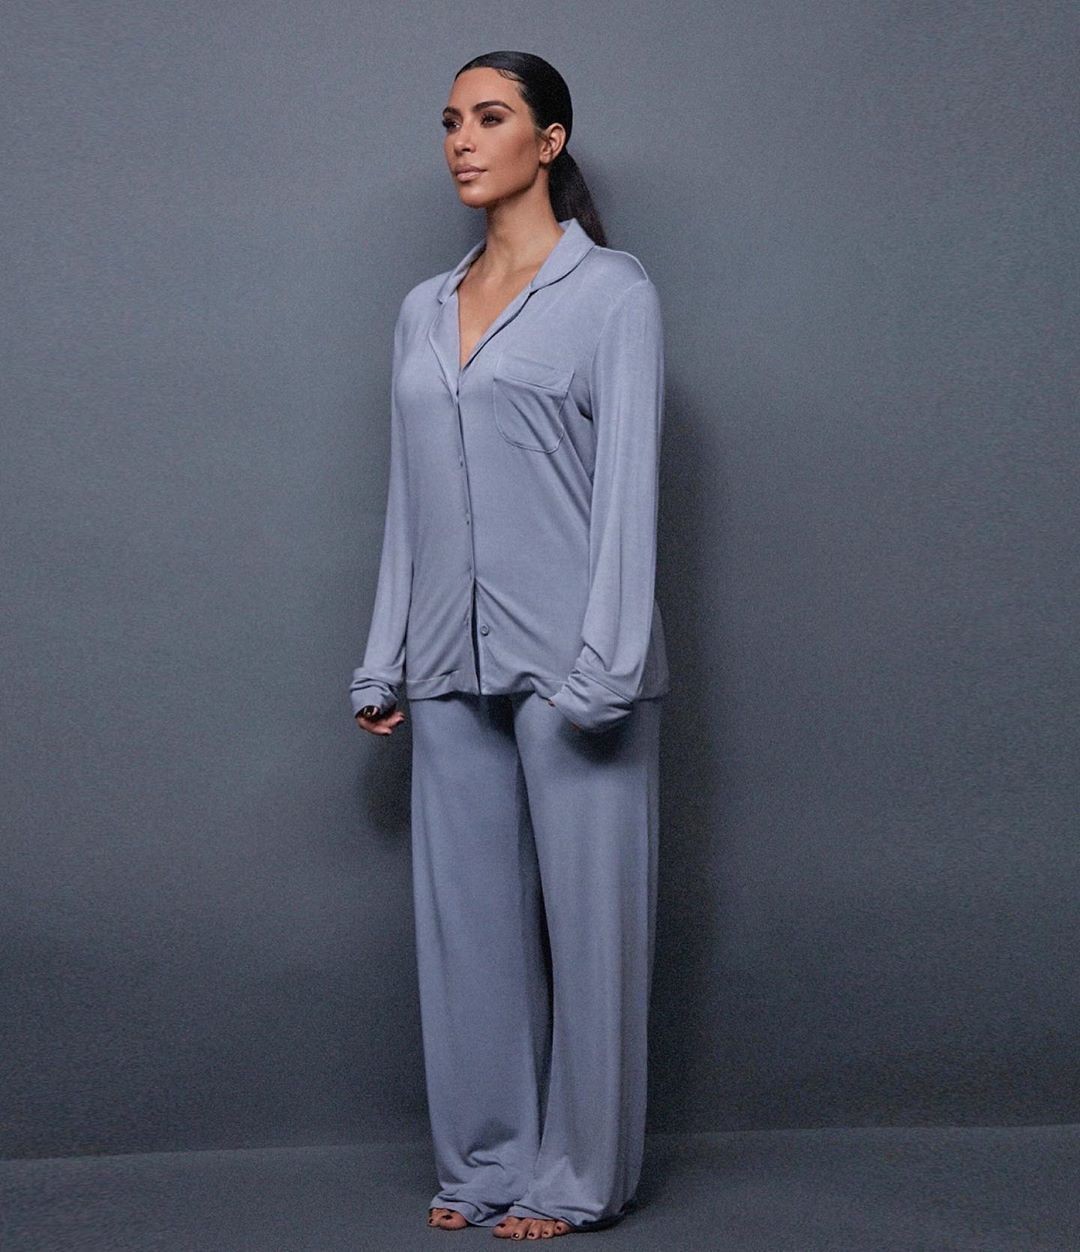 Ким Кардашян представила дебютную коллекцию домашней одежды